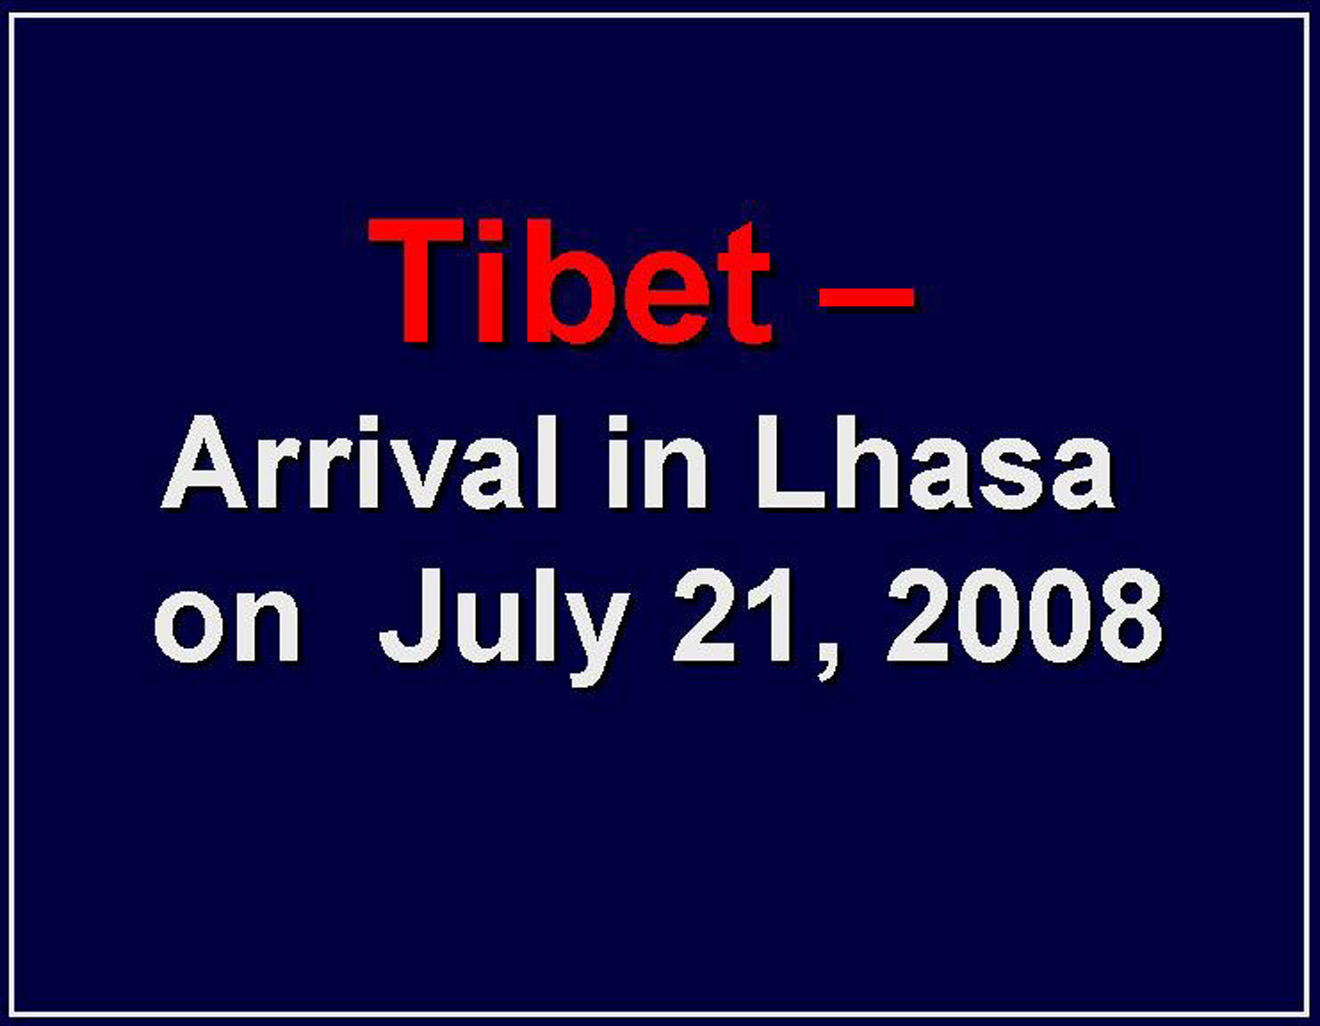 Eclipse 2008 - Tibet - A04 - Tibet-Arrival